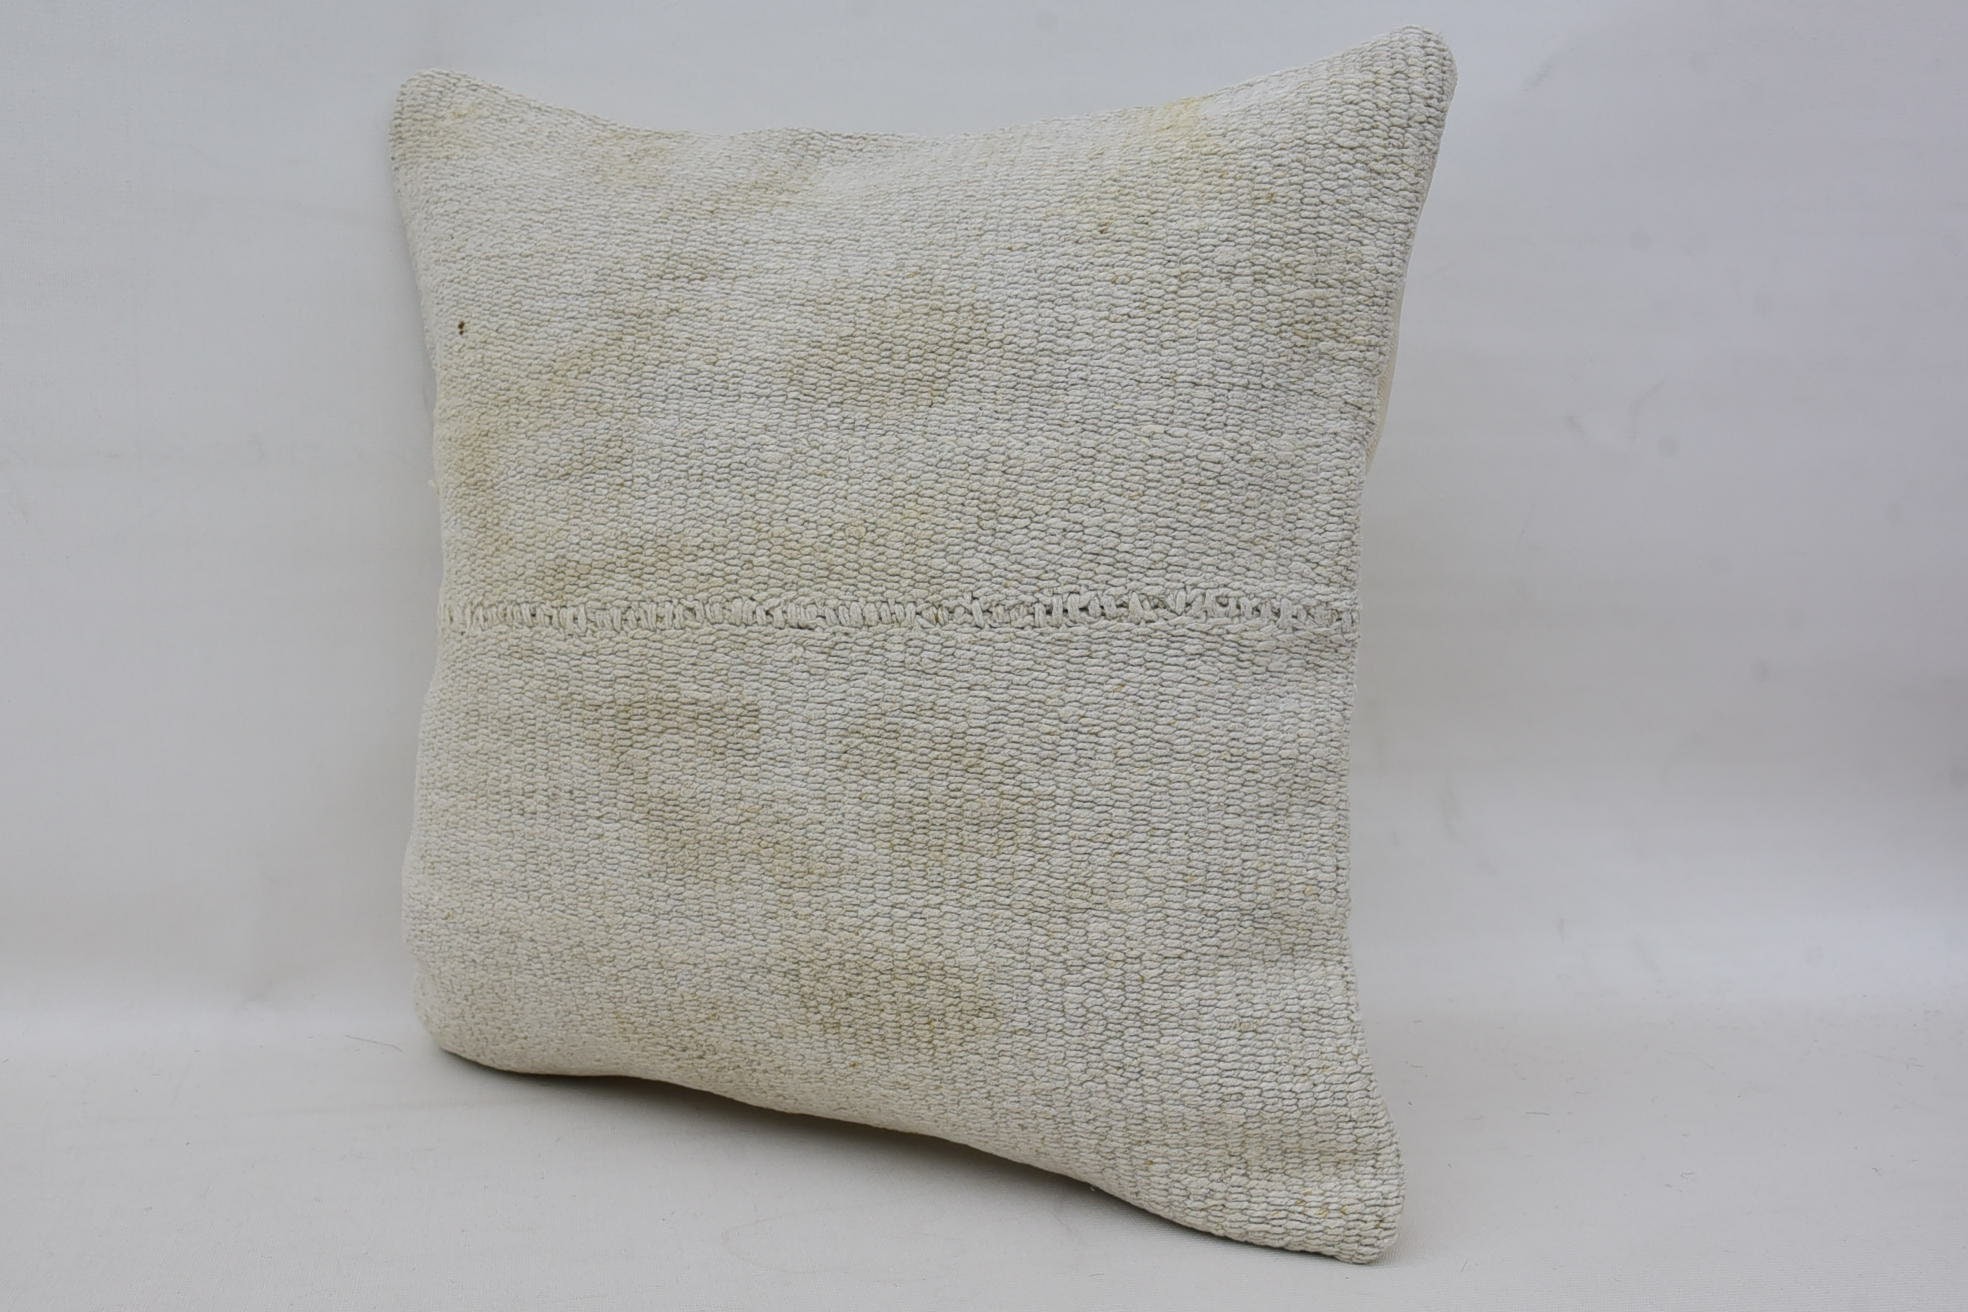 Antique Pillows, 14"x14" White Cushion, Vintage Kilim Throw Pillow, Handmade Kilim Cushion, Decorative Throw Pillow Sham